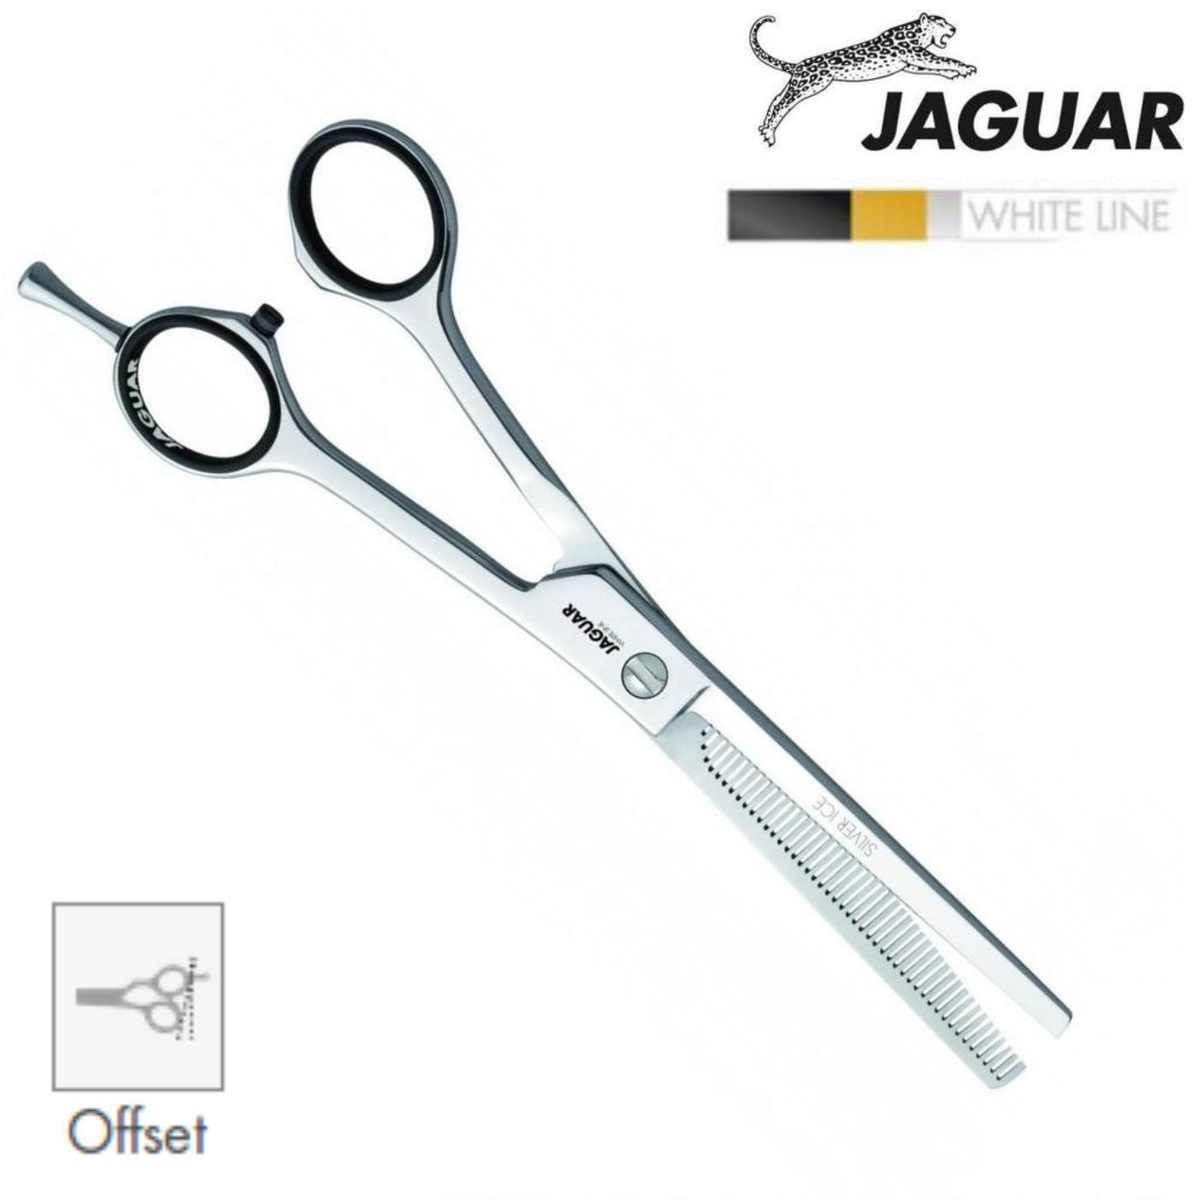 Jaguar Relax Offset Thinning Shears